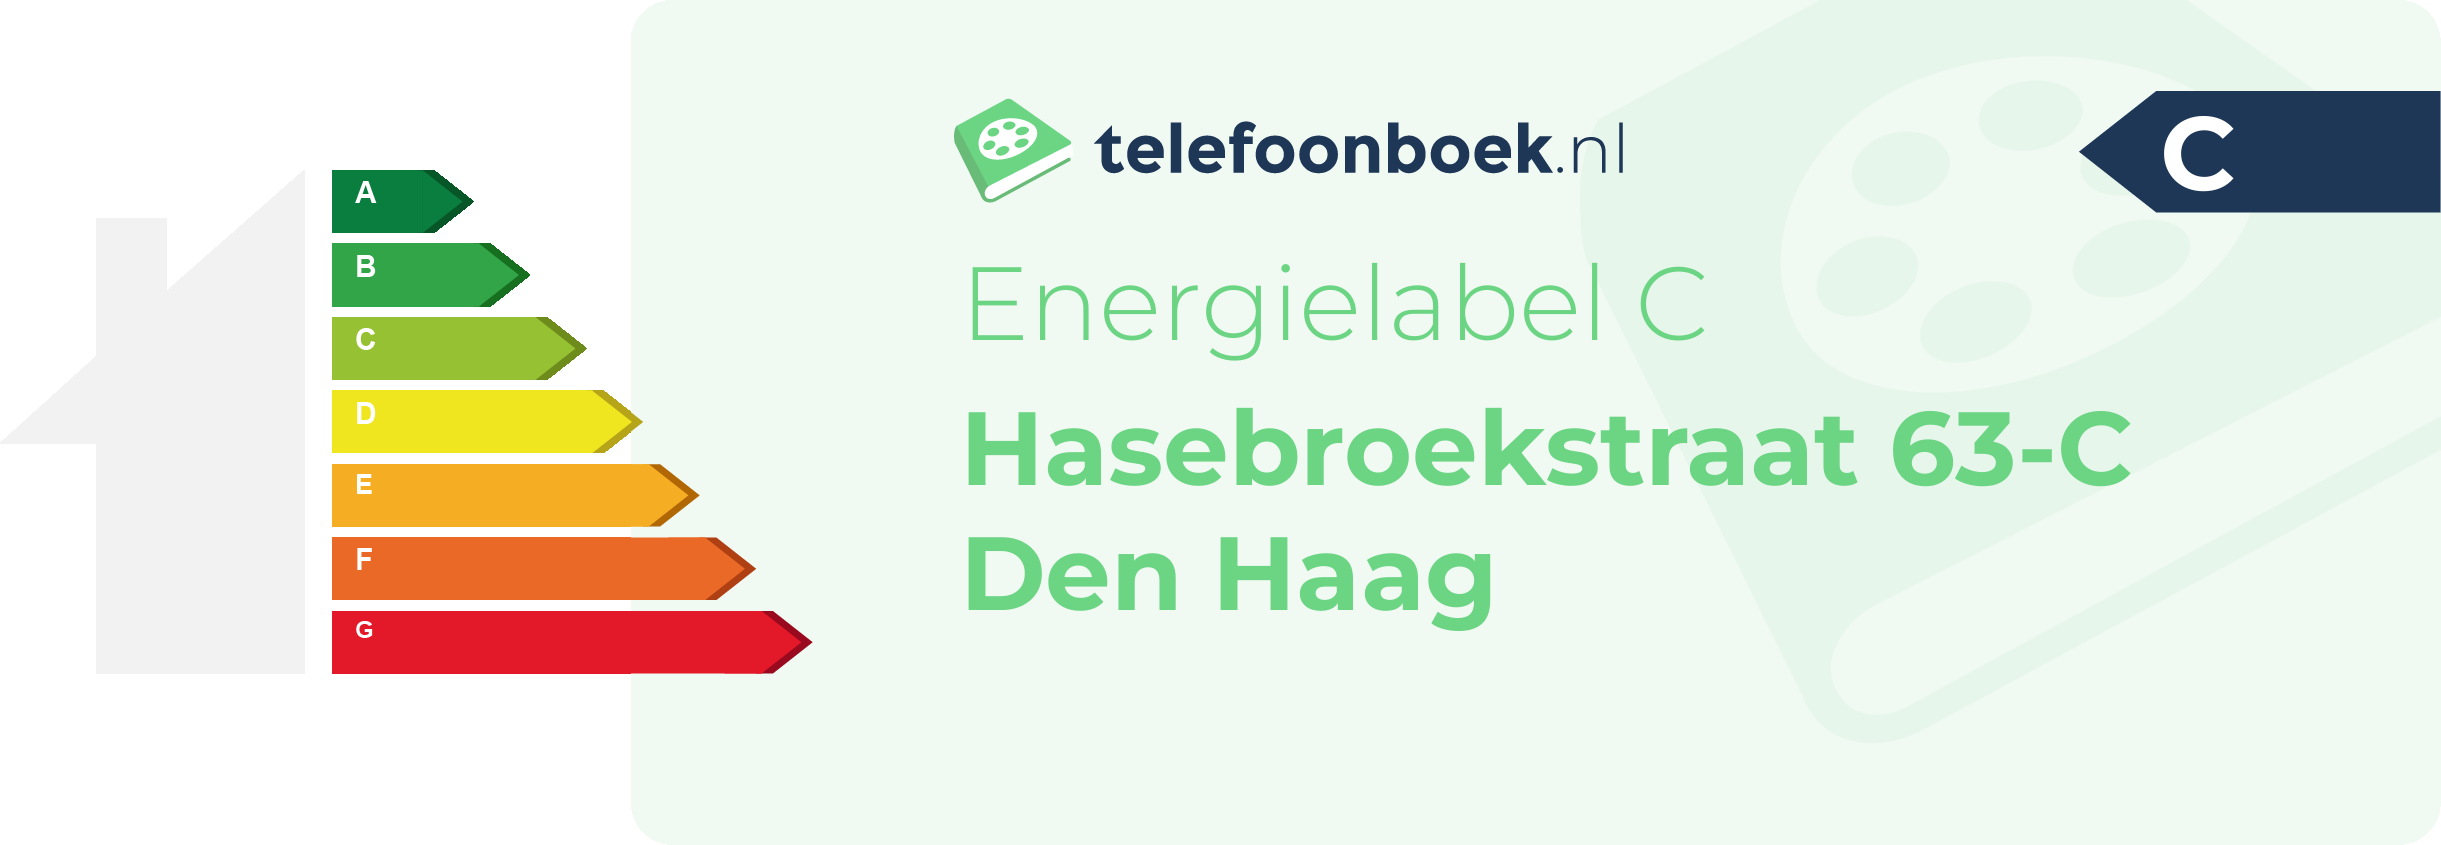 Energielabel Hasebroekstraat 63-C Den Haag